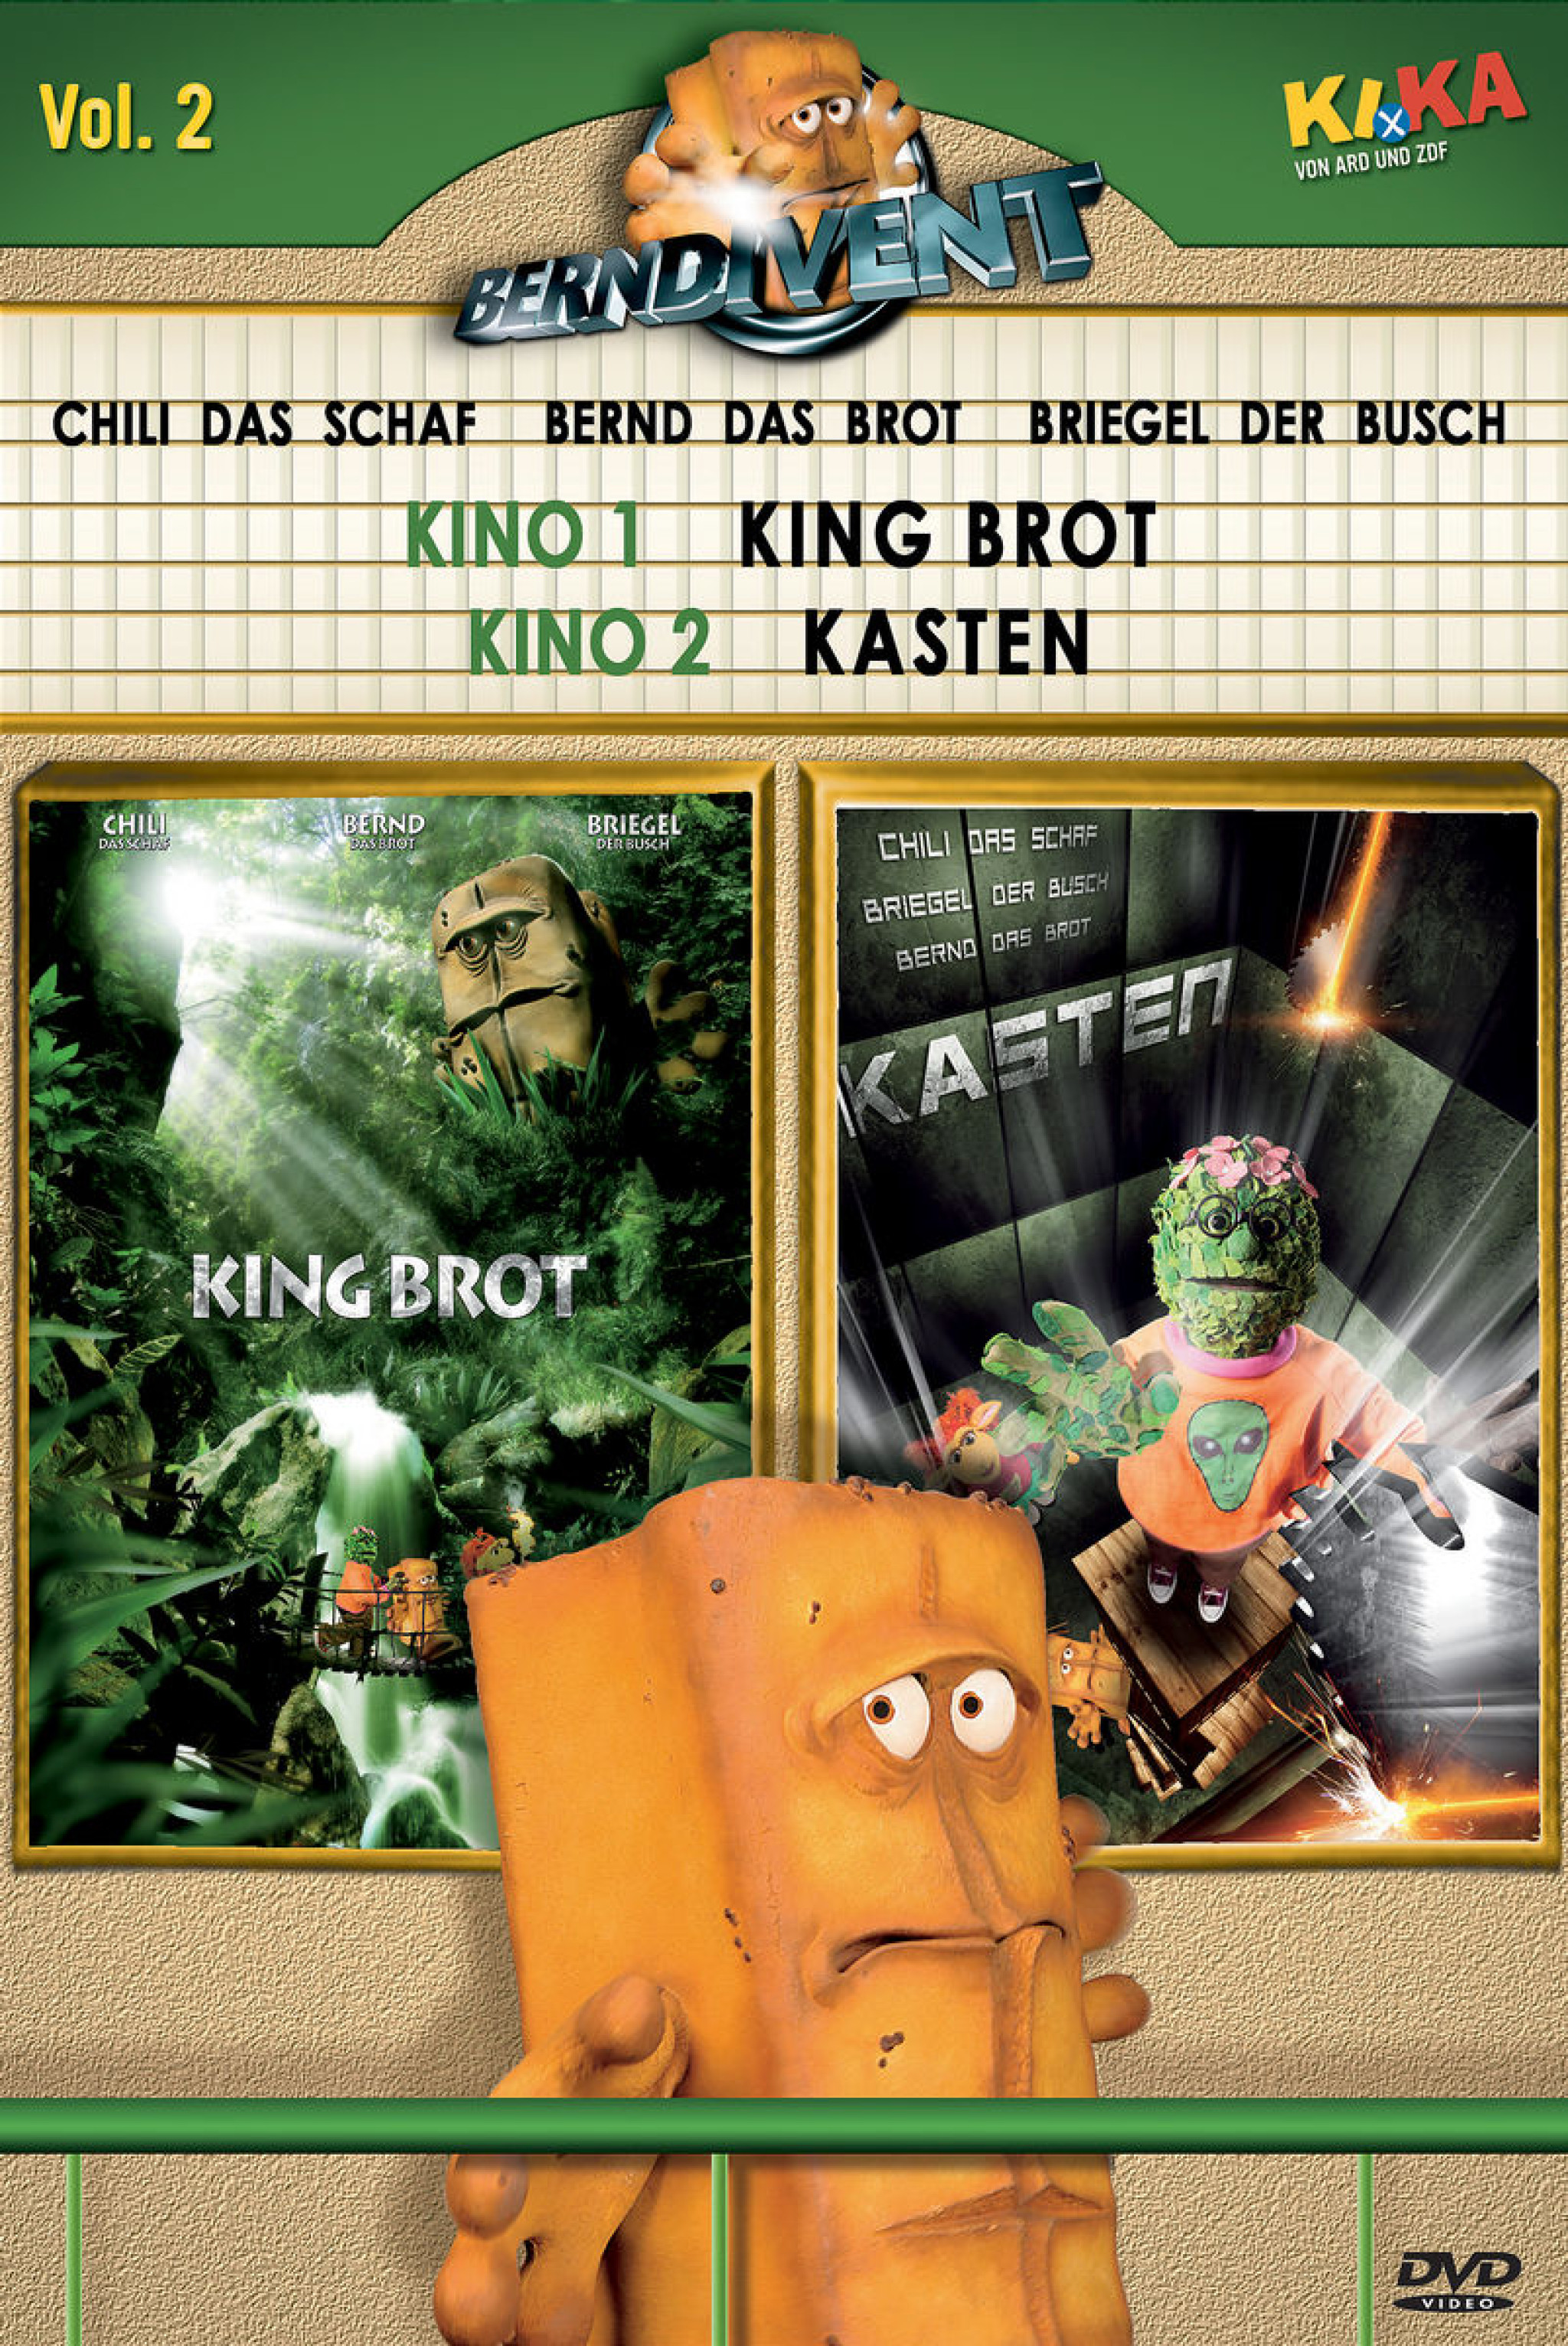 02: King Brot & KASTEN! 0602498774773